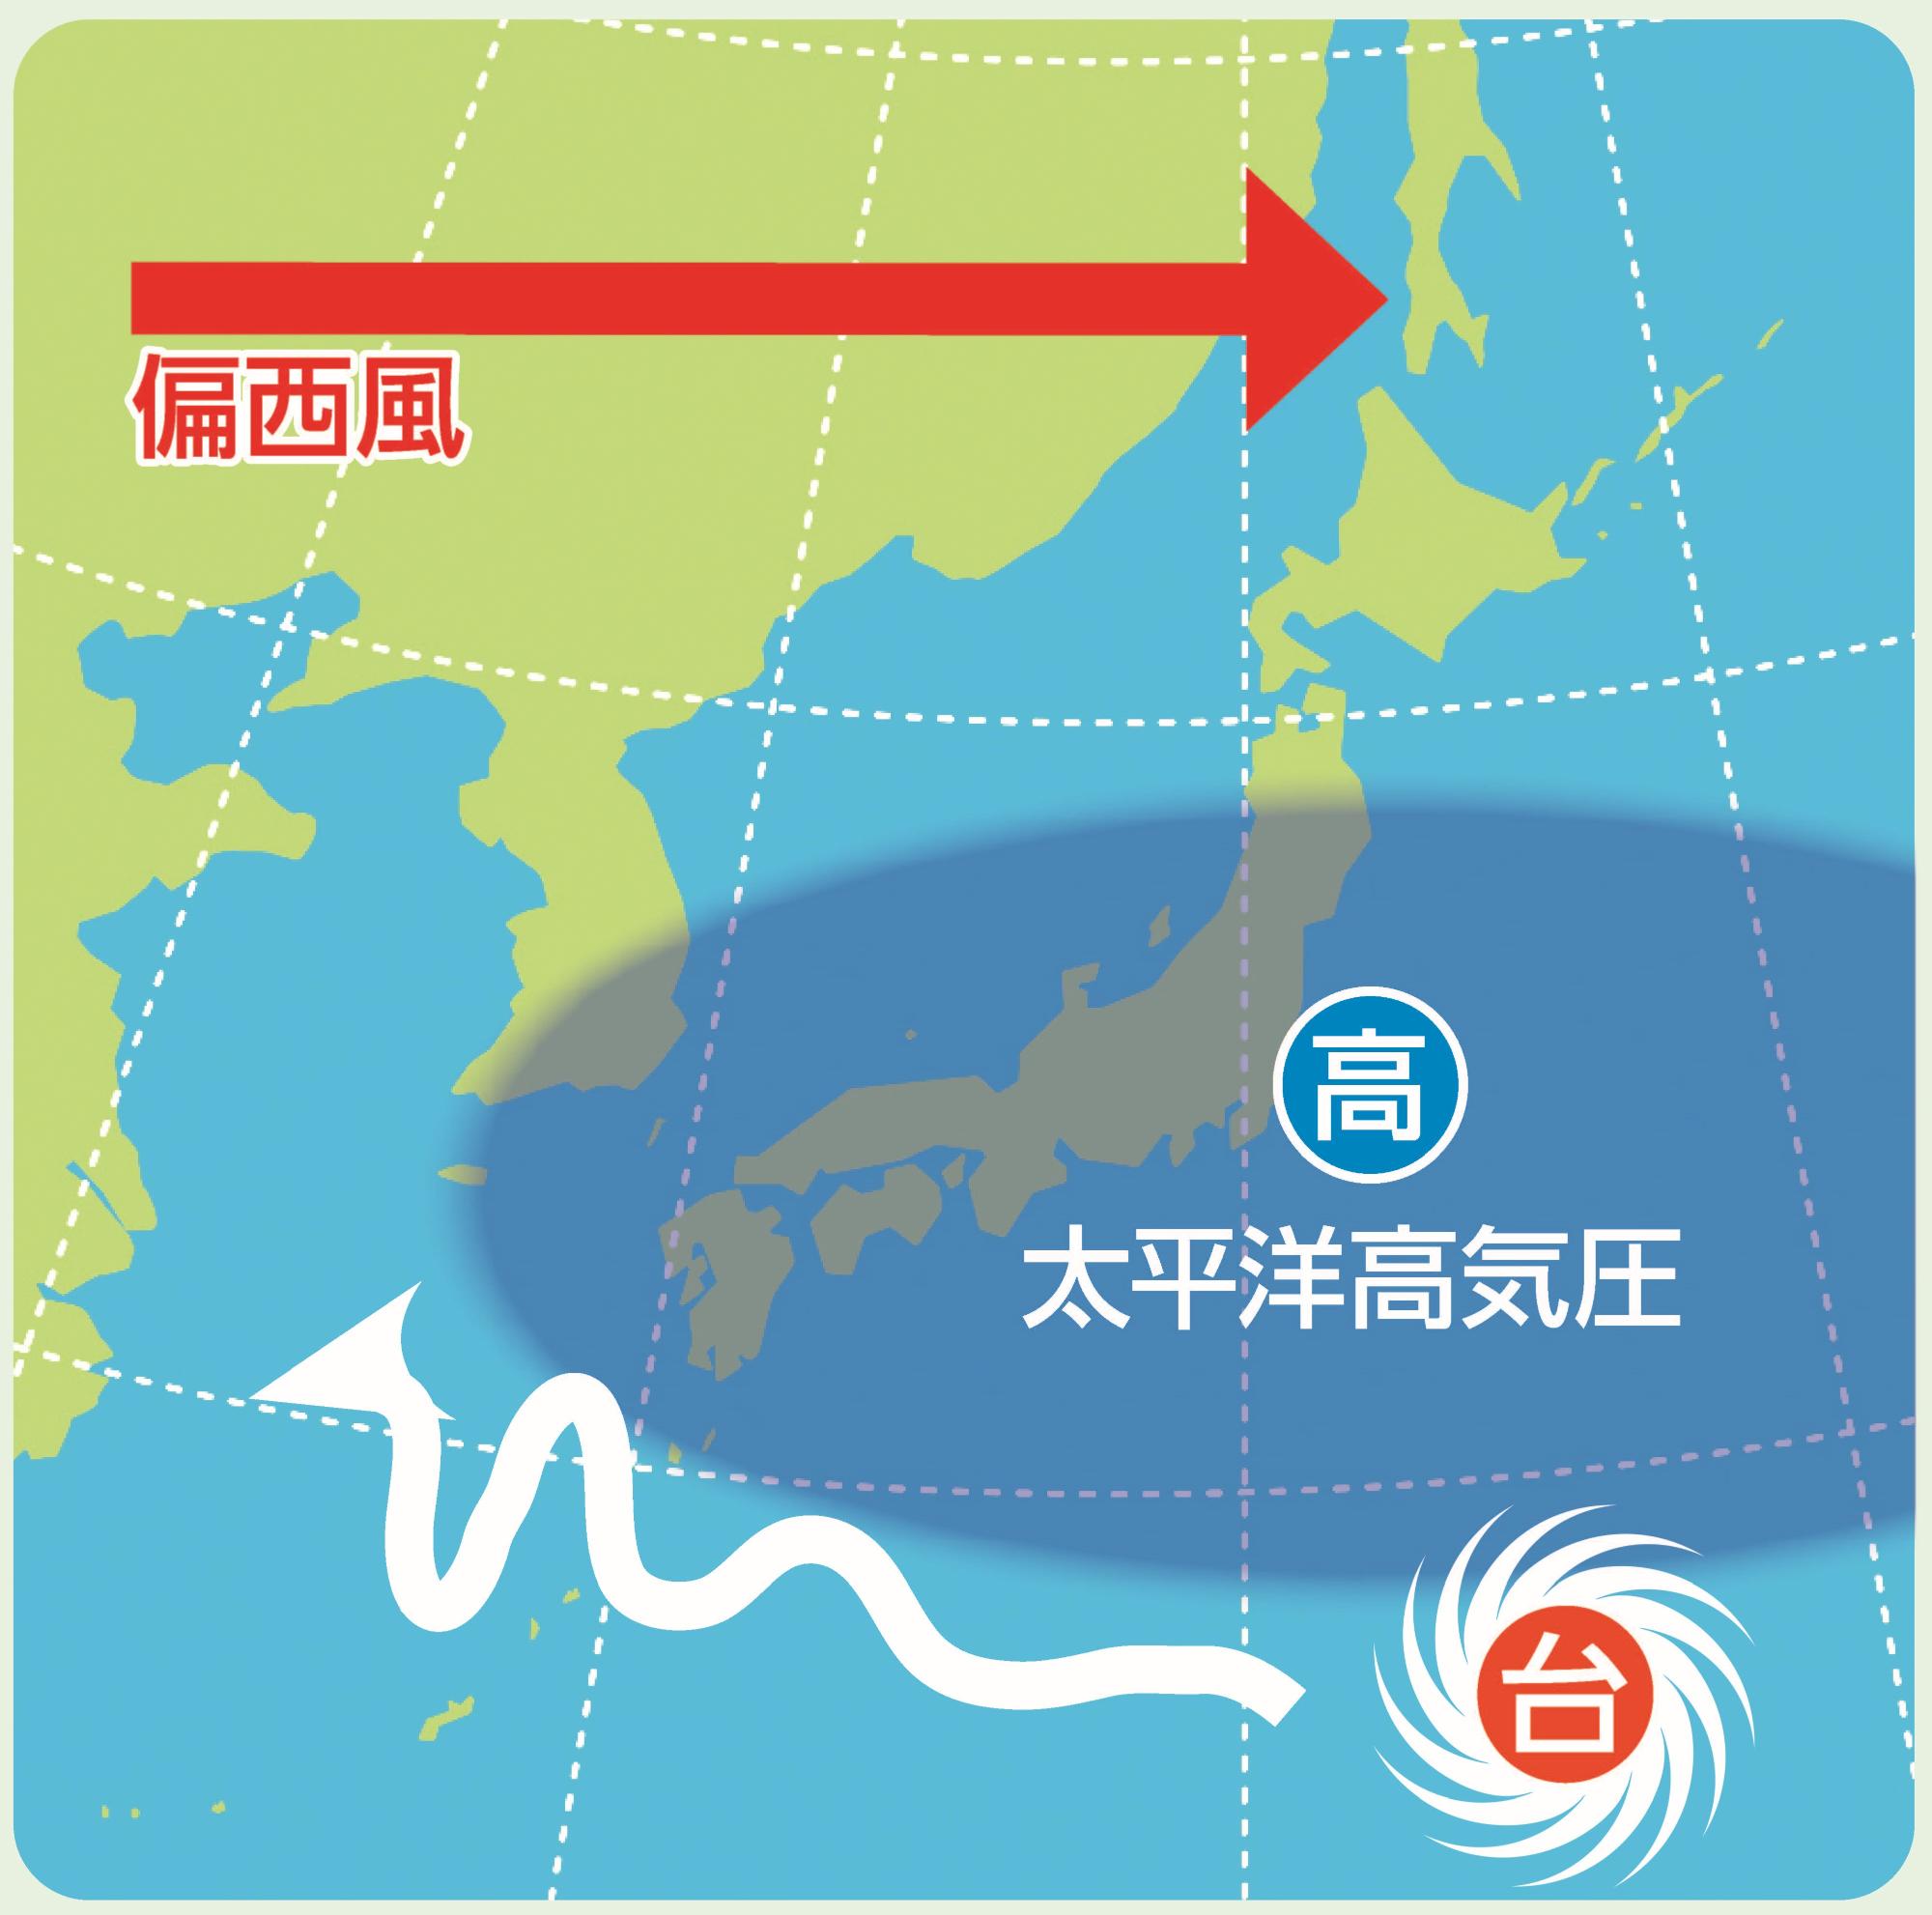 夏の台風の特徴を示した天気図。日本の広い範囲に太平洋高気圧があり、偏西風は北側を通り抜けるため、台風は高気圧の下を蛇行するように進んでいる。